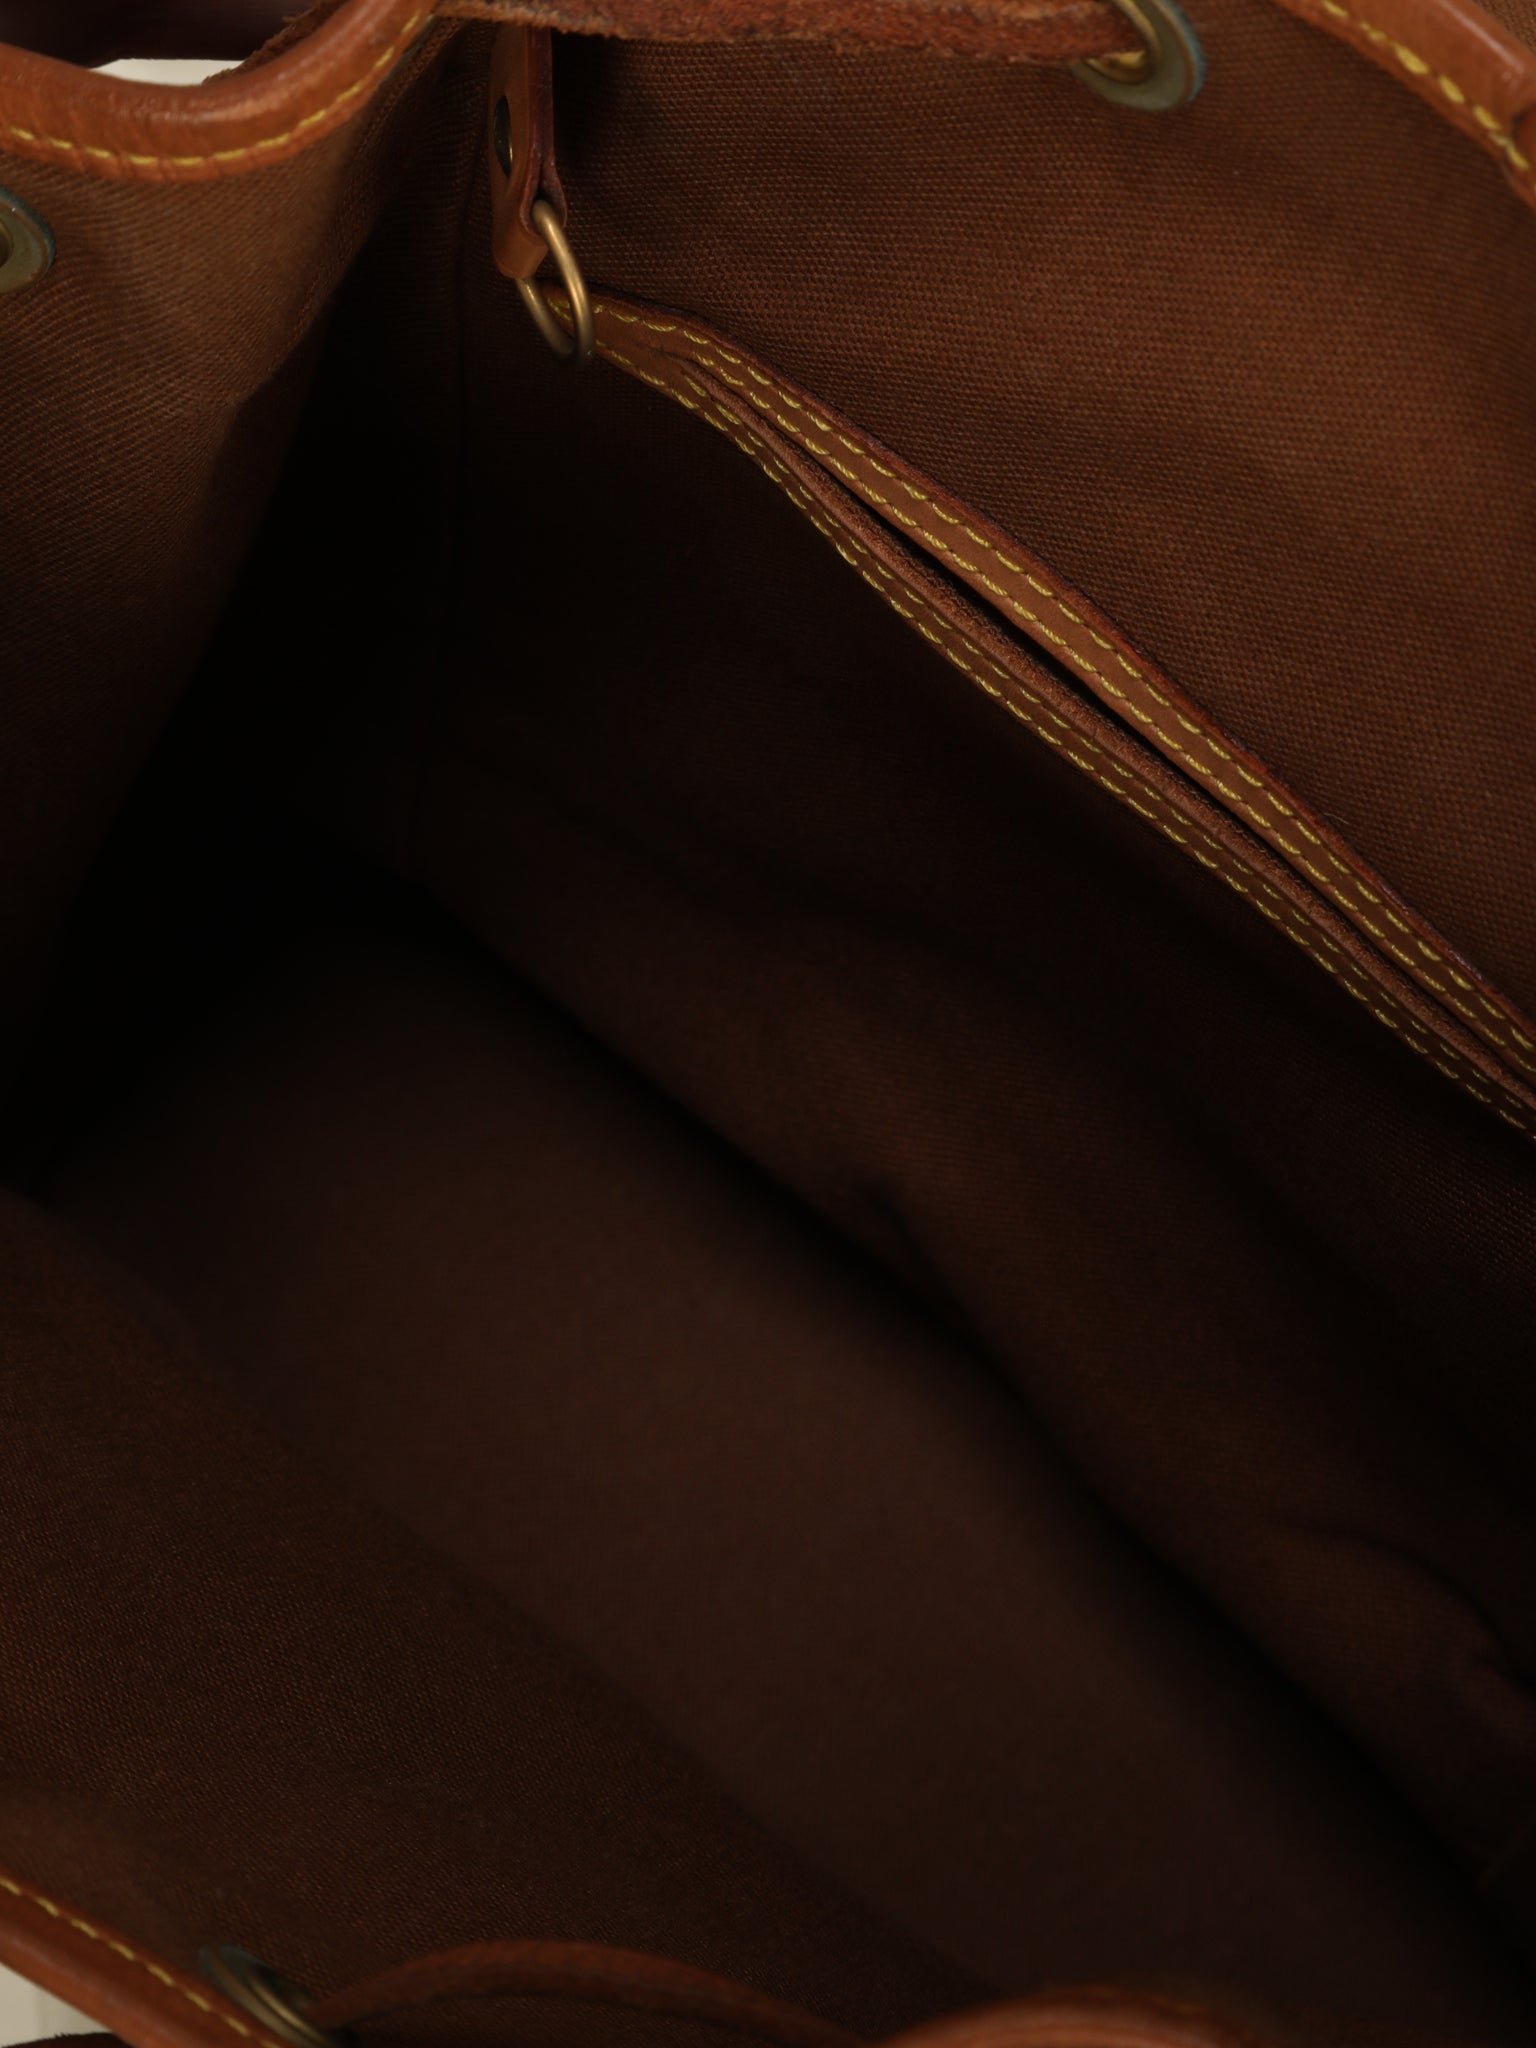 Louis Vuitton Montsouris MM Backpack – SFN